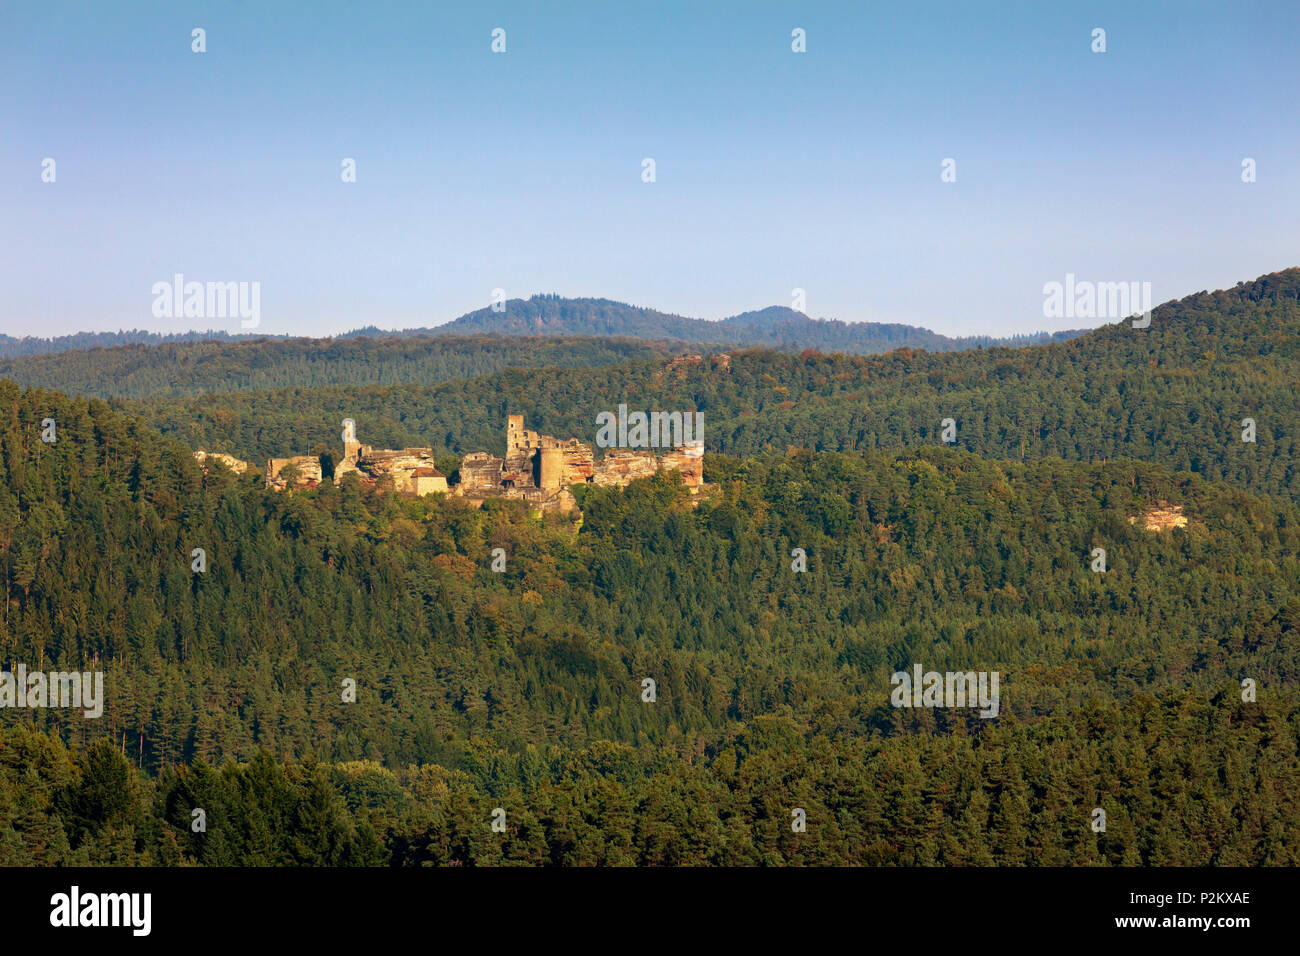 Dahner groupe château Burgen, près de Dahn, Dahner Felsenland, parc naturel de la Forêt du Palatinat, Rhénanie-Palatinat, Allemagne Banque D'Images